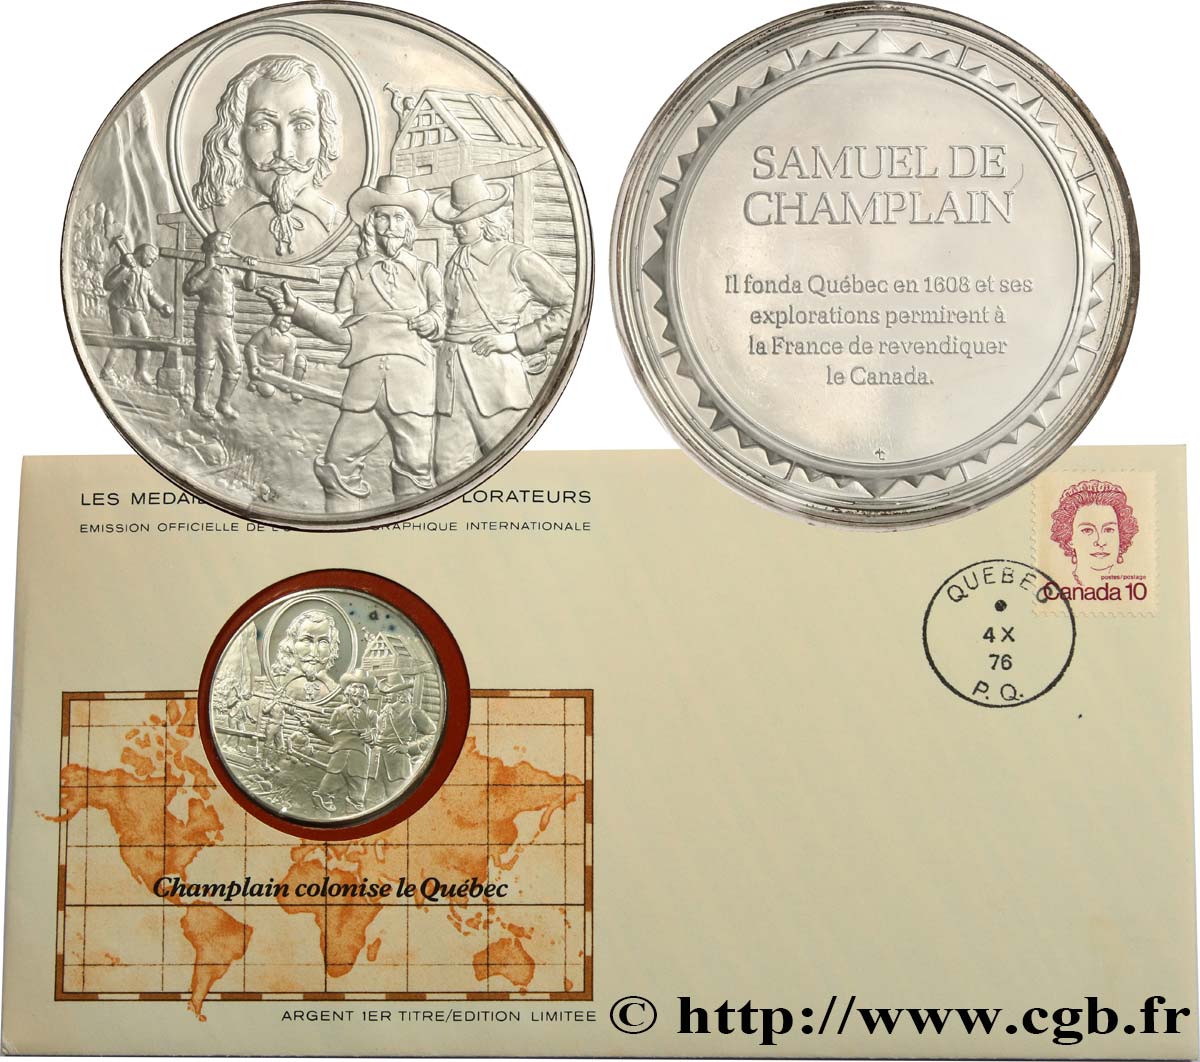 THE GREAT EXPLORERS  MEDALS Enveloppe “Timbre médaille”, Champlain colonise le Québec SC